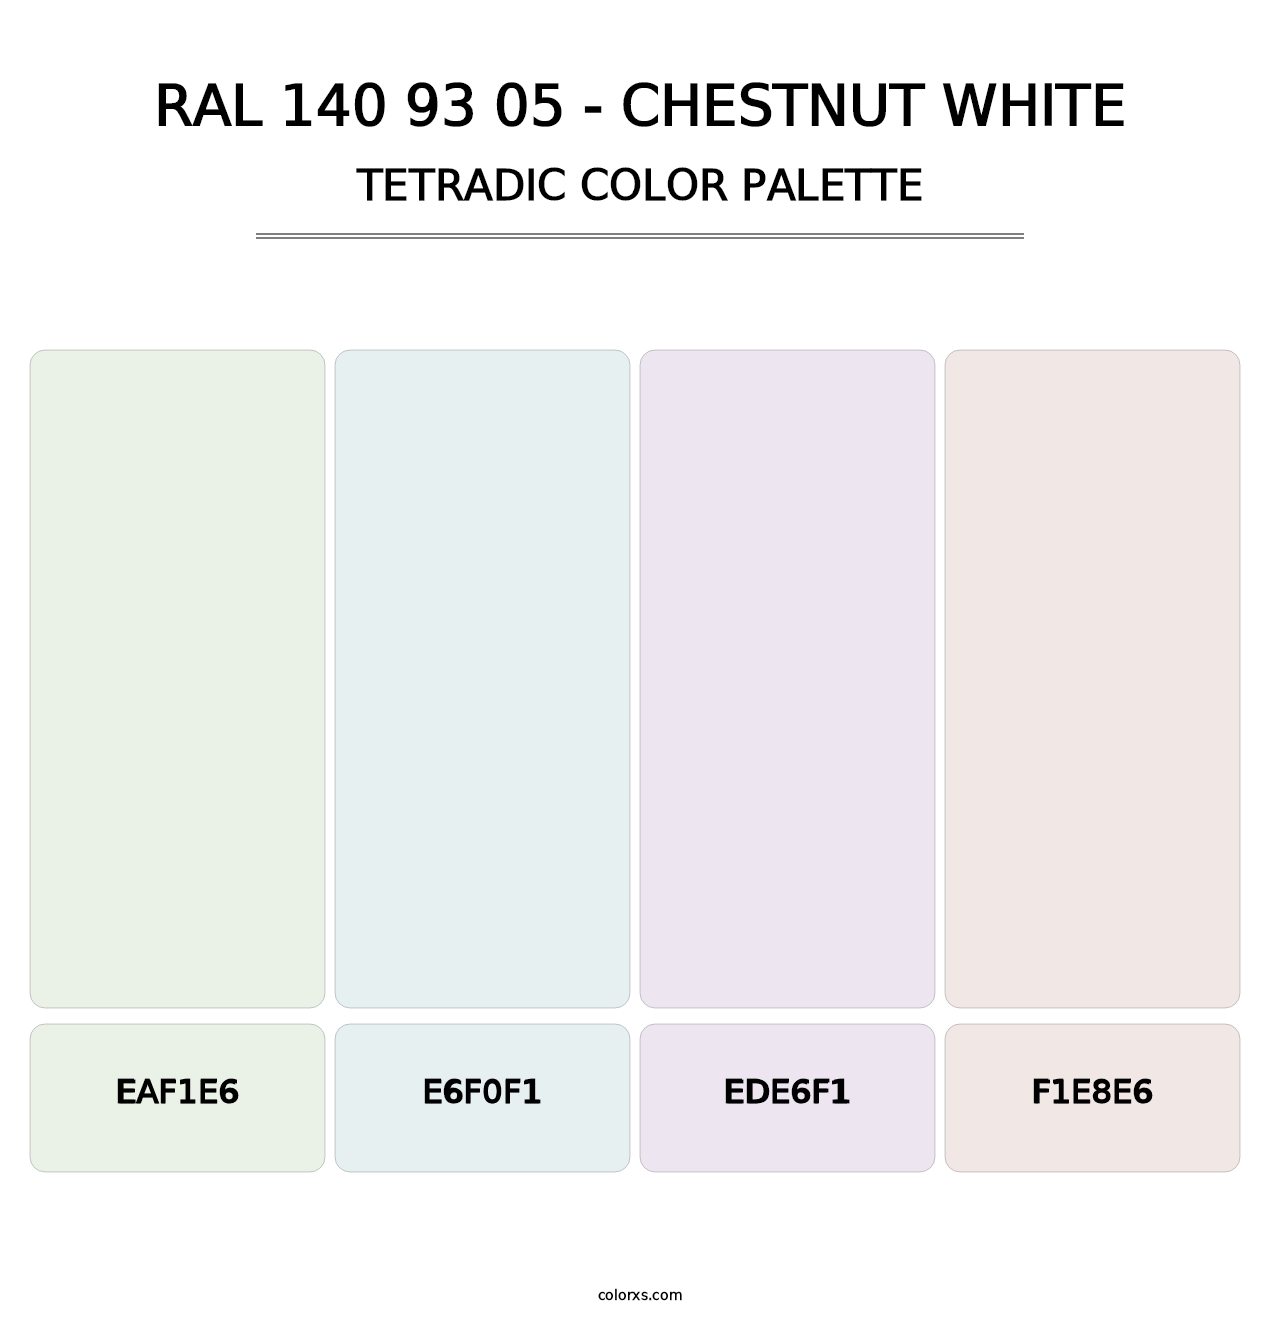 RAL 140 93 05 - Chestnut White - Tetradic Color Palette